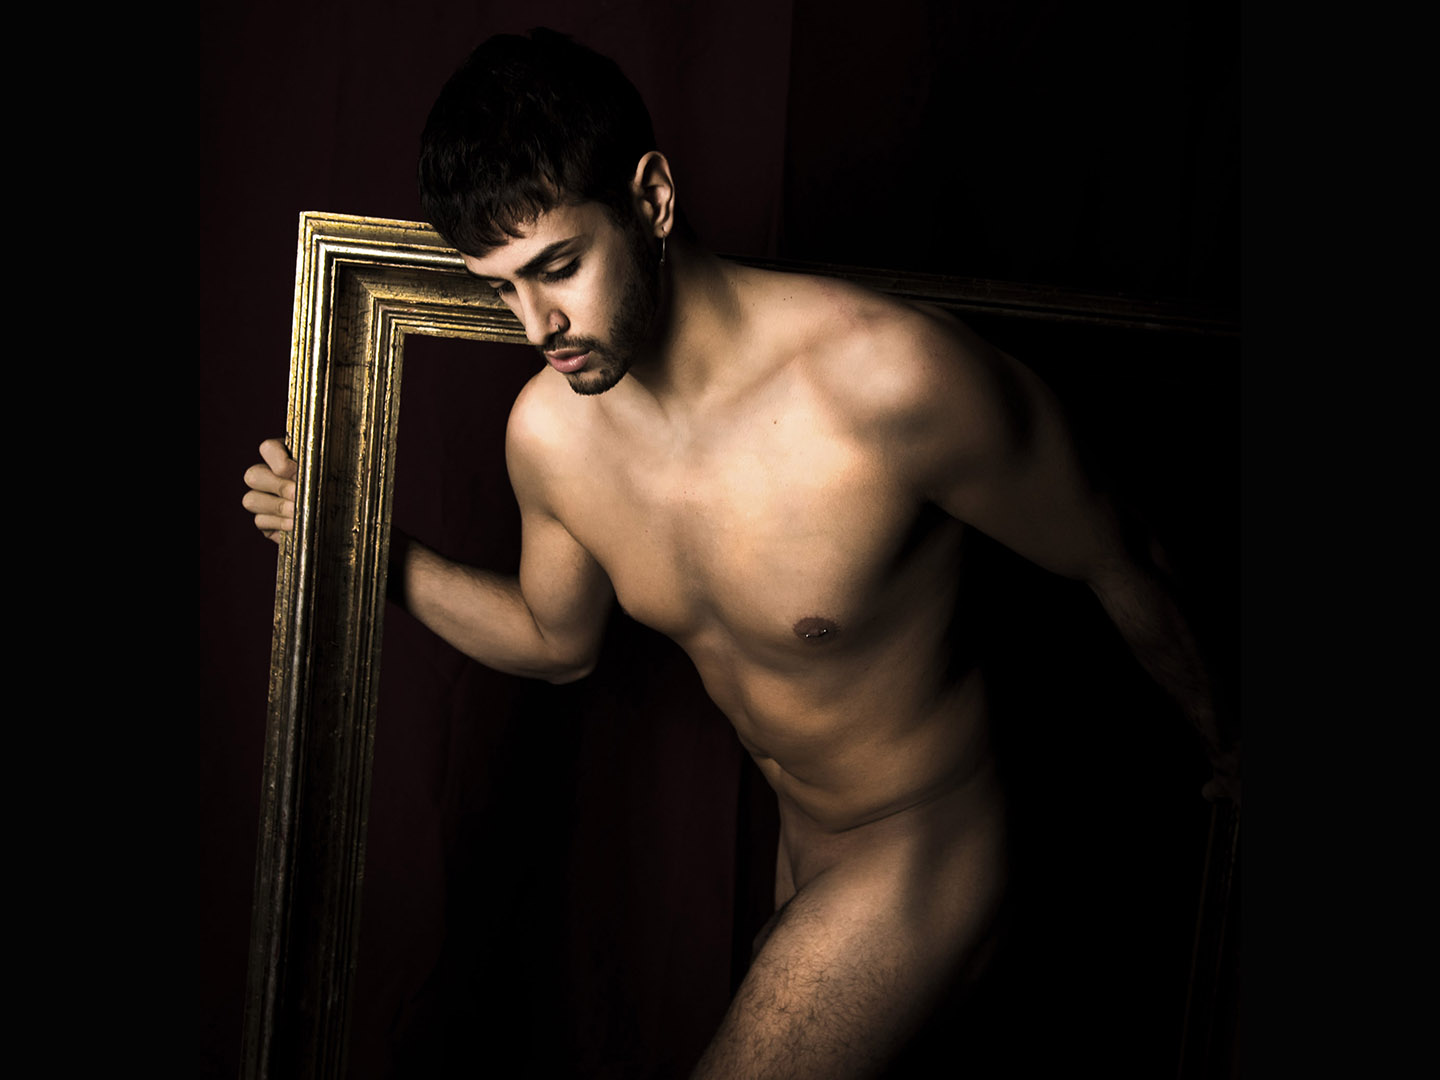 Categorie: Boudoir & Nude, Portrait - Photographer: GENNARO FRANCO (Interlunium) - Model: ALESSANDRO COCORULLO - Location: Napoli, NA, Italia